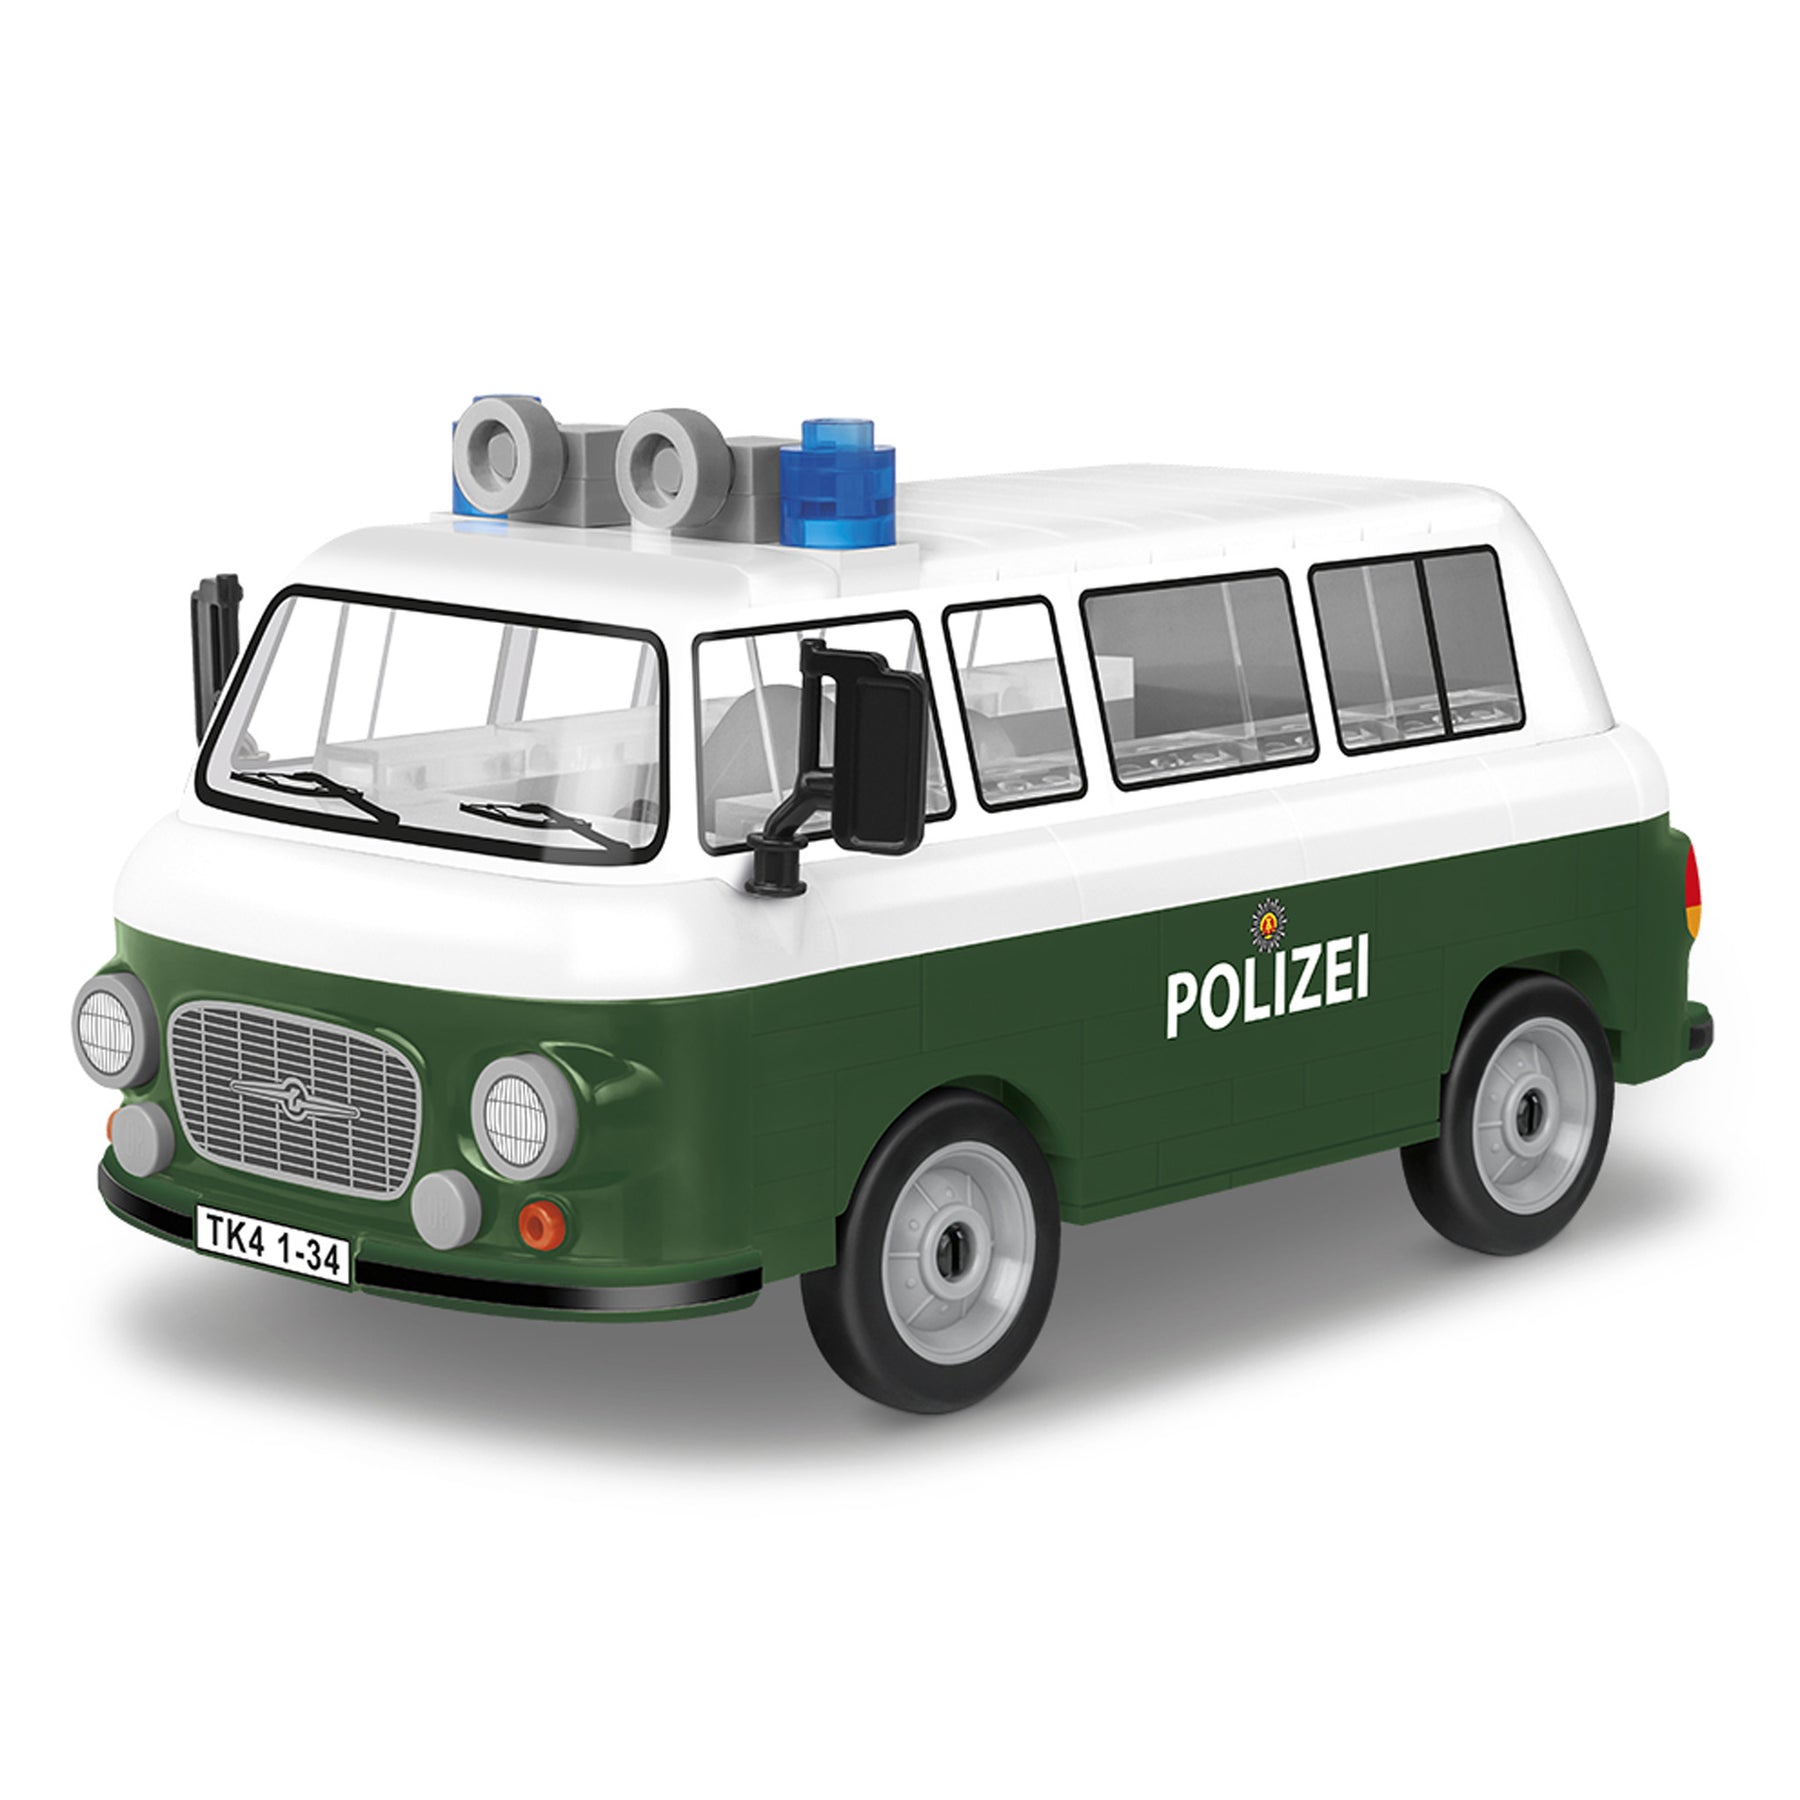 24596 - Barkas B1000 Polizei (Cobi)